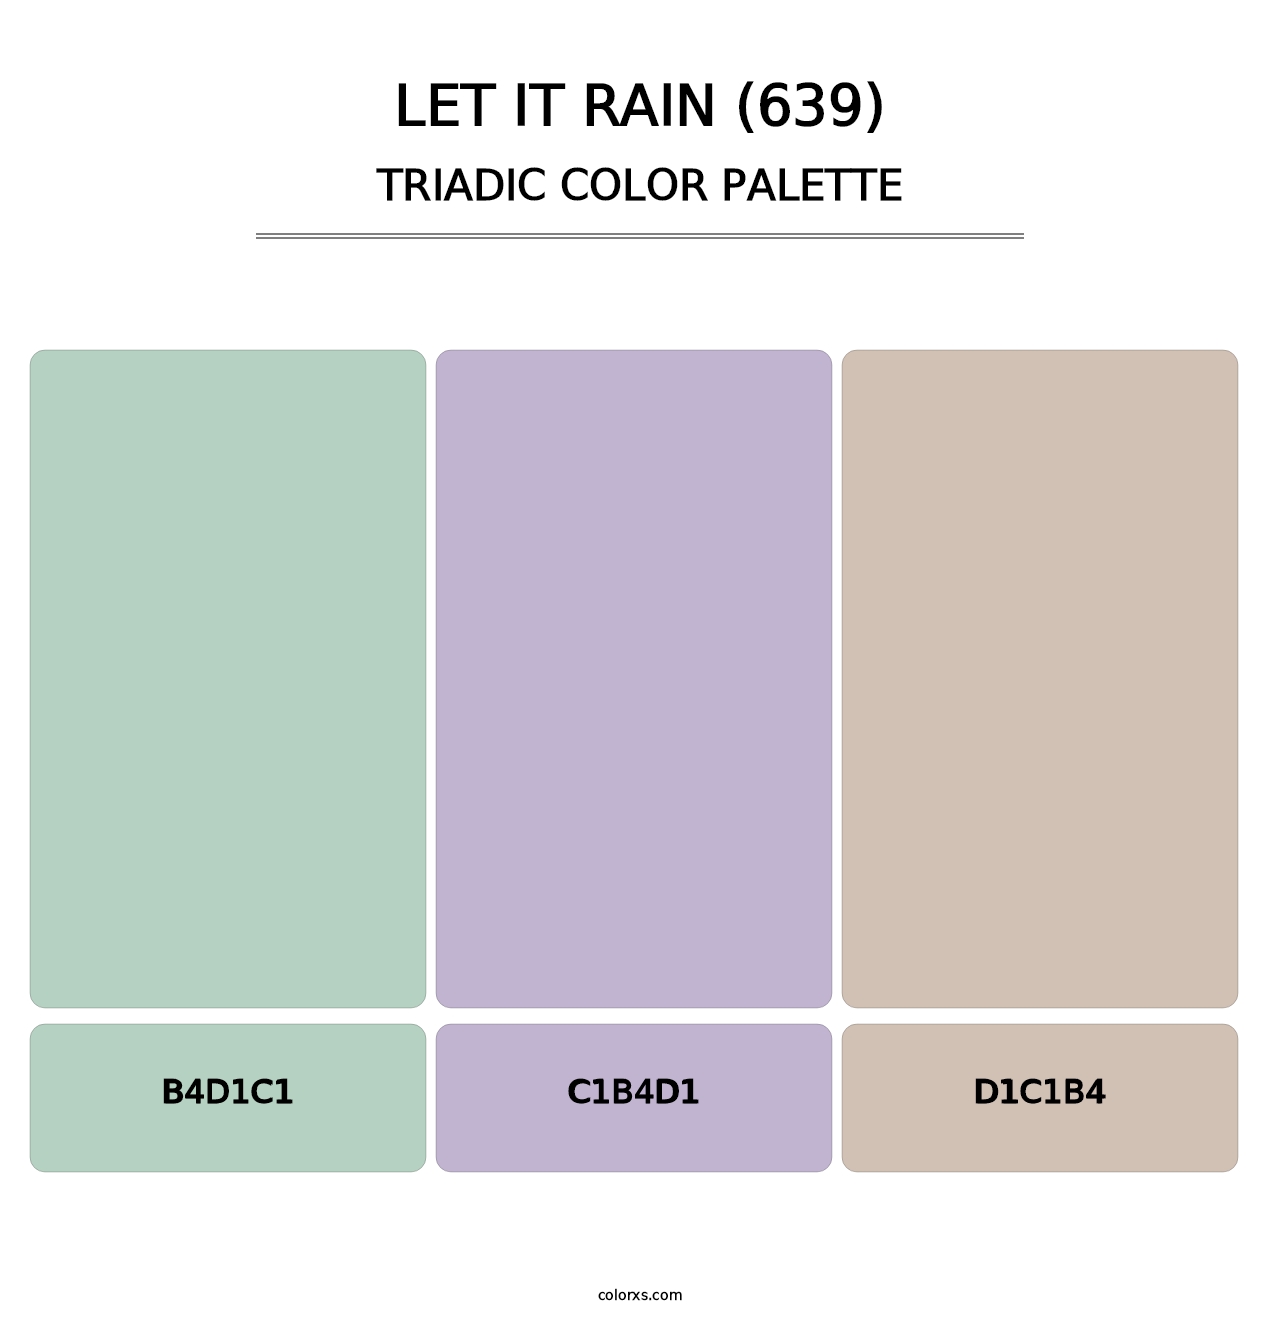 Let It Rain (639) - Triadic Color Palette